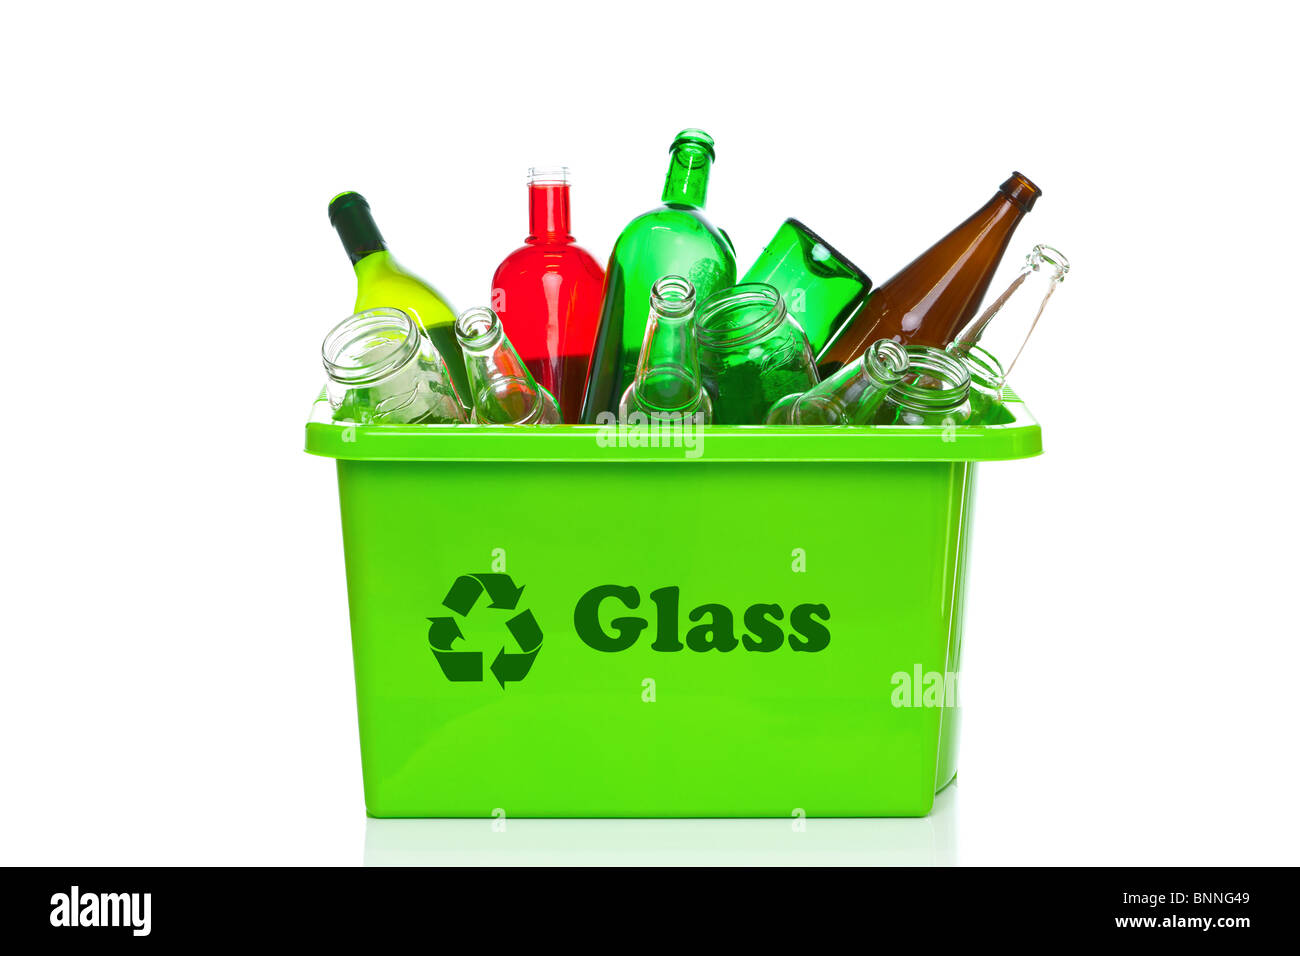 Foto von einem grünen Glas recycling Behälter isoliert auf einem weißen Hintergrund. Stockfoto